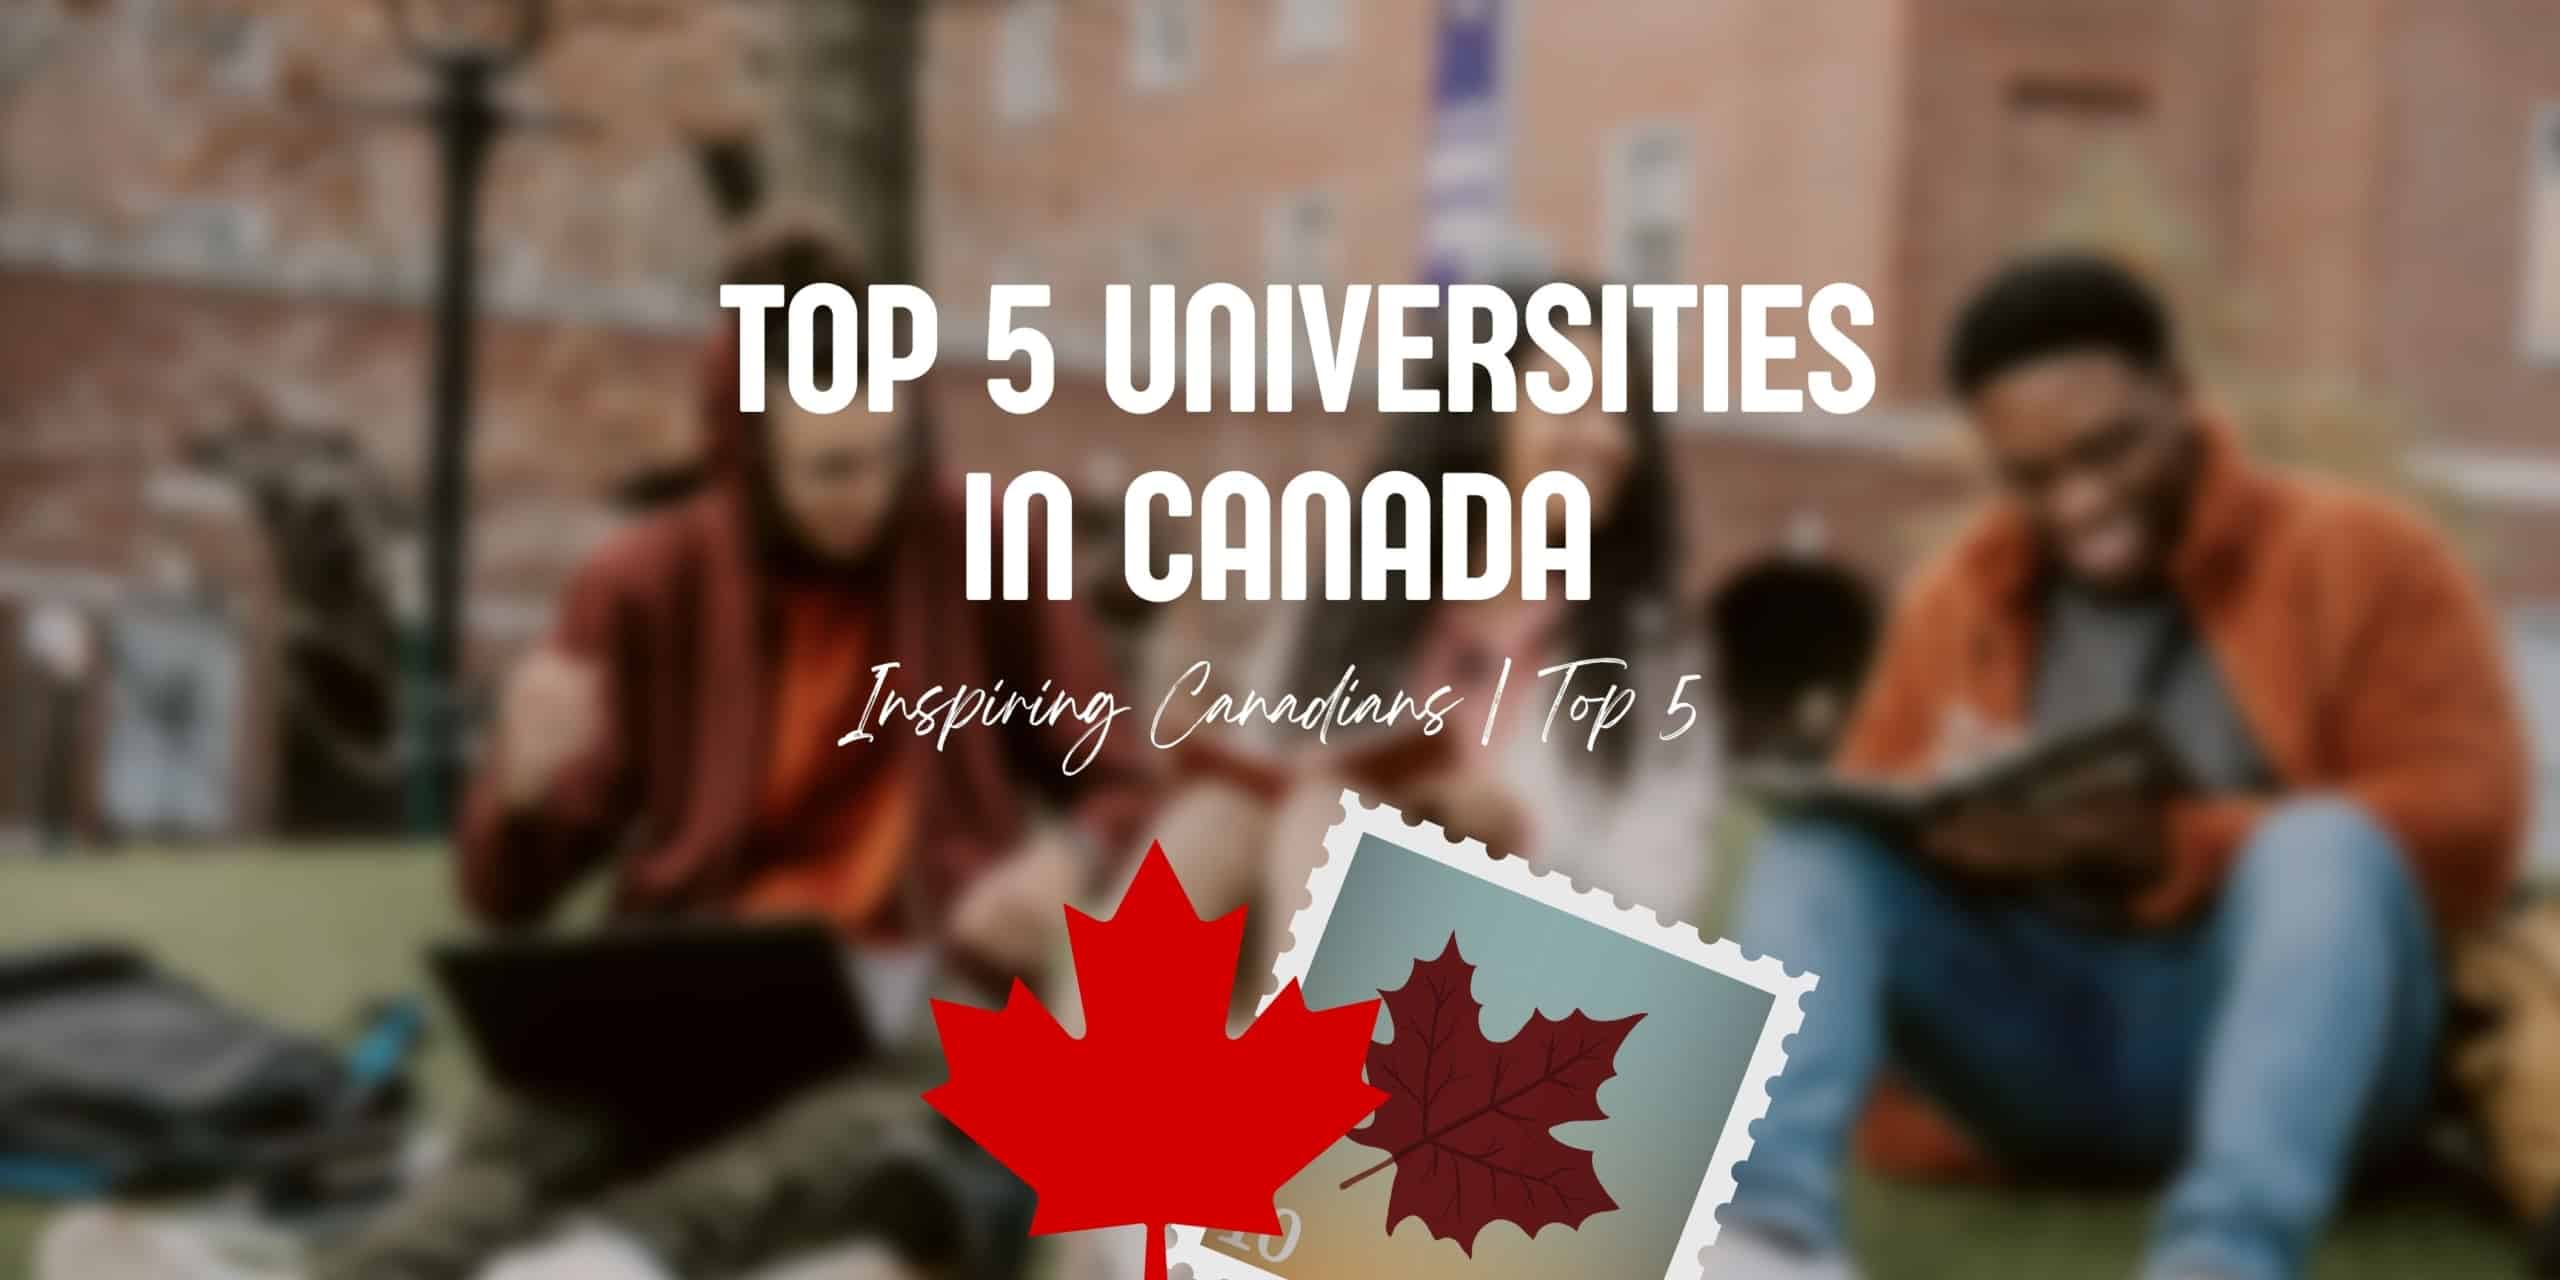 Top 5 universities in Canada | Best universities in Canada